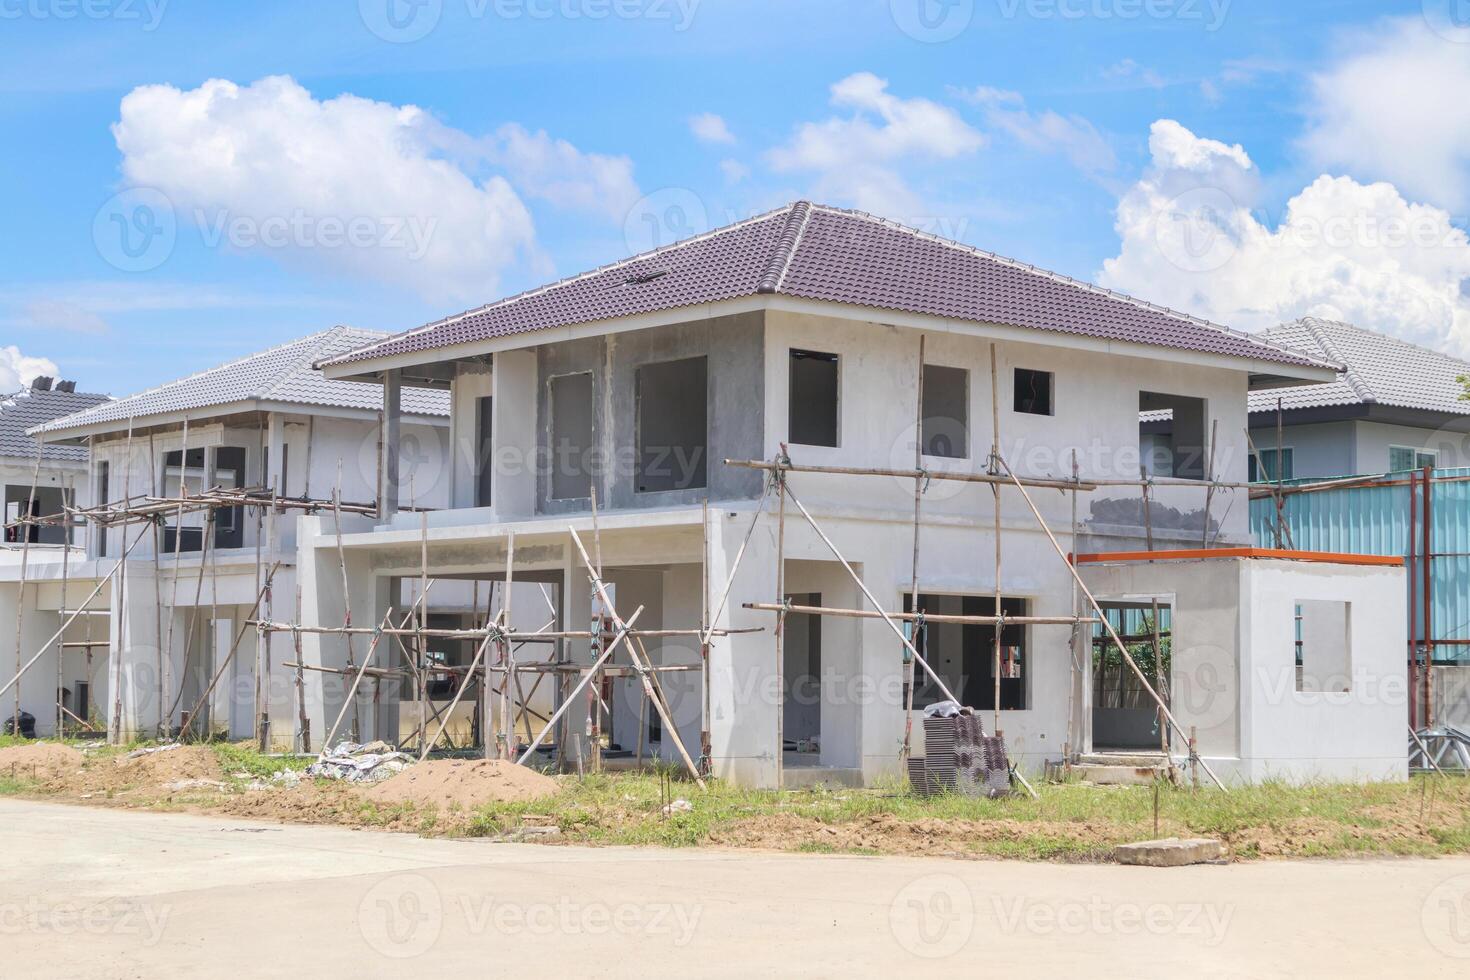 costruzione Residenziale nuovo Casa con prefabbricazione sistema nel progresso a edificio luogo foto